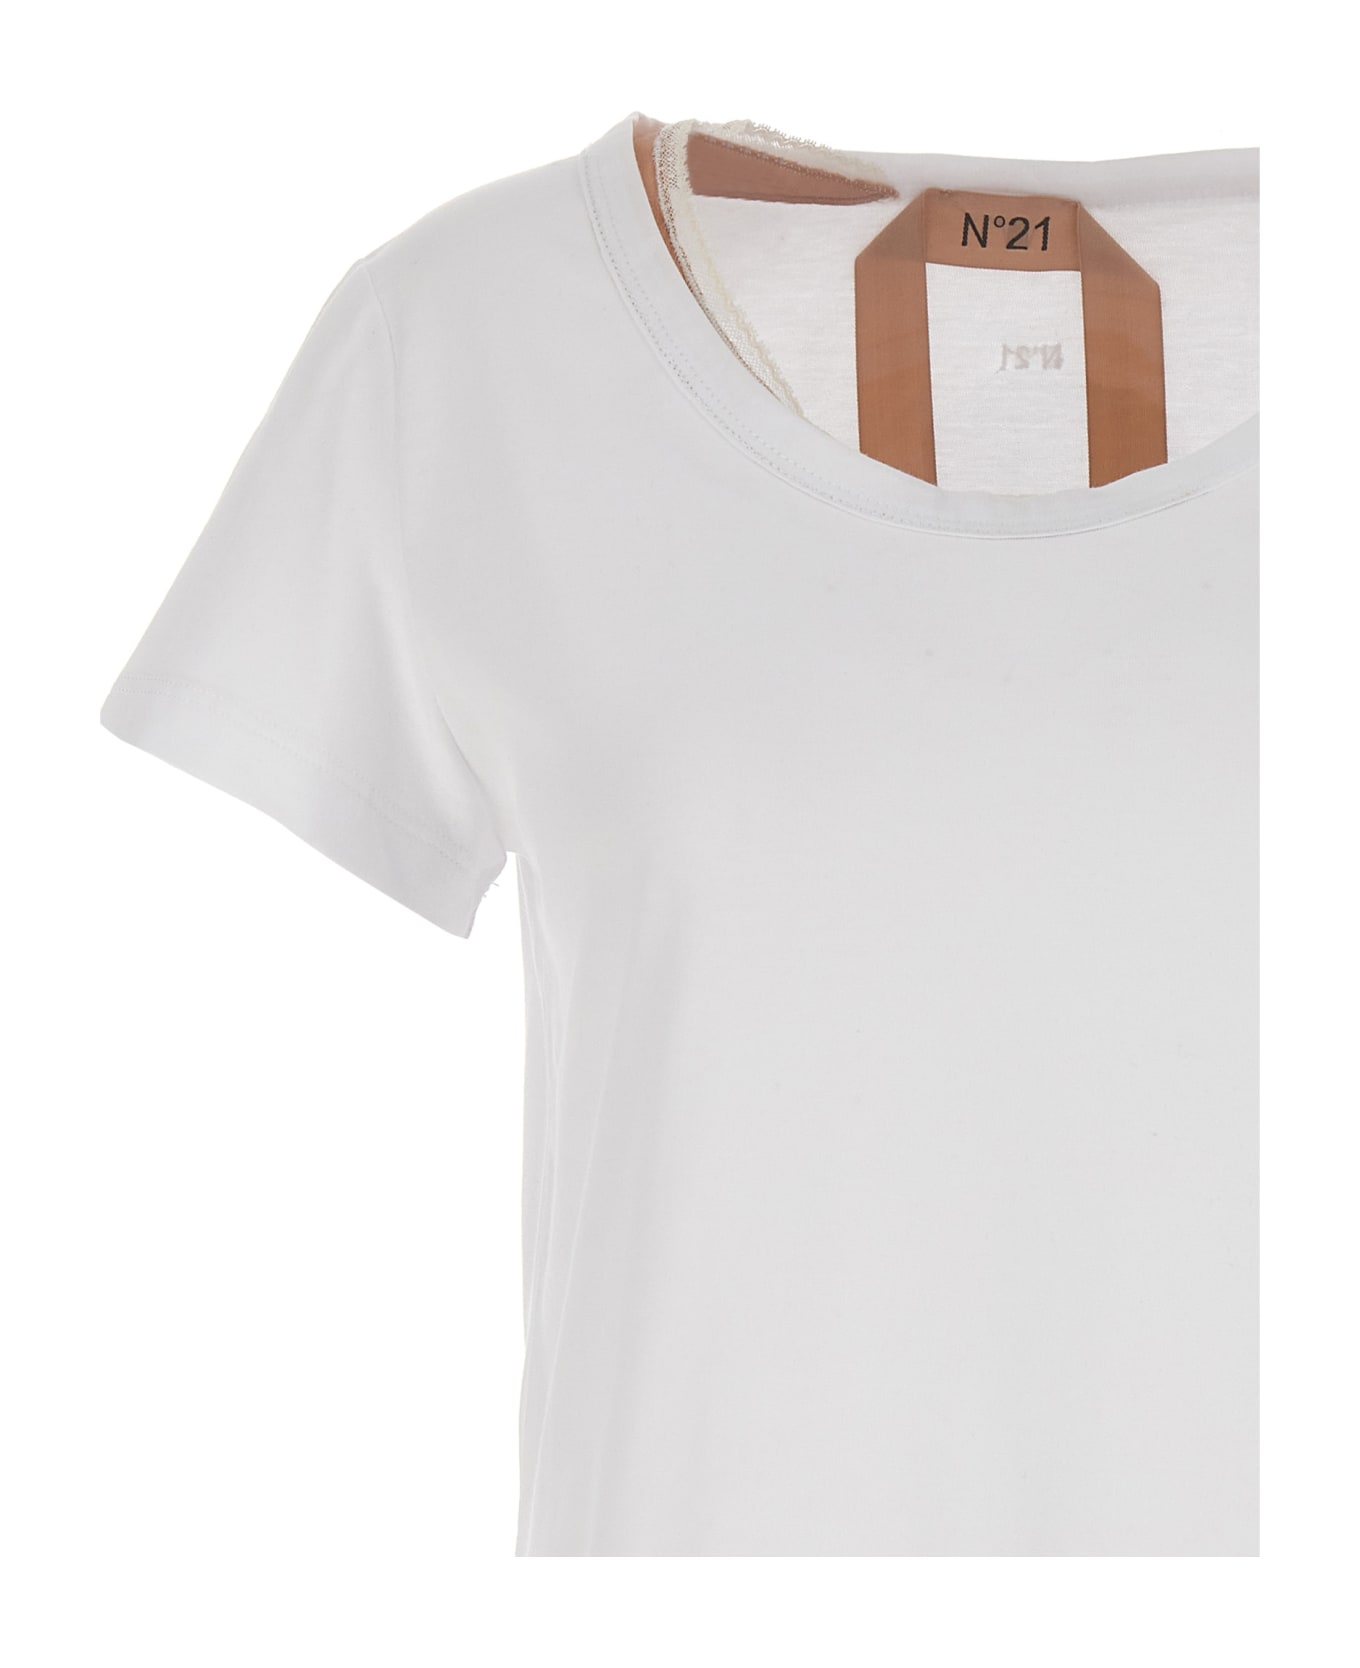 N.21 Slip Insert T-shirt - White